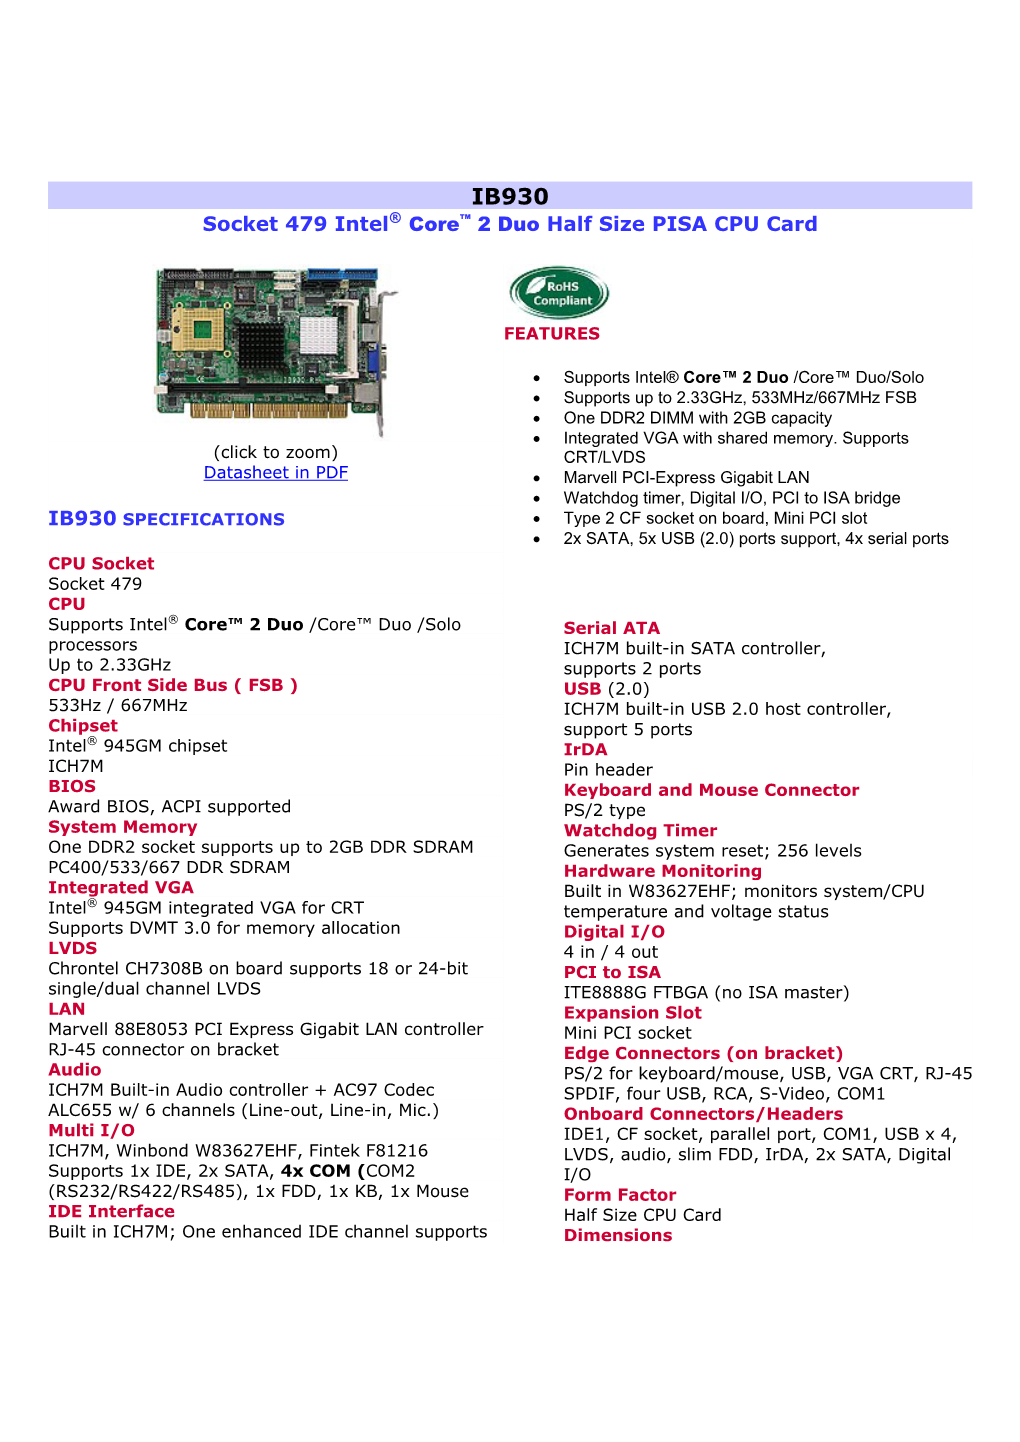 Socket 479 Intel® Core™ 2 Duo Half Size PISA CPU Card